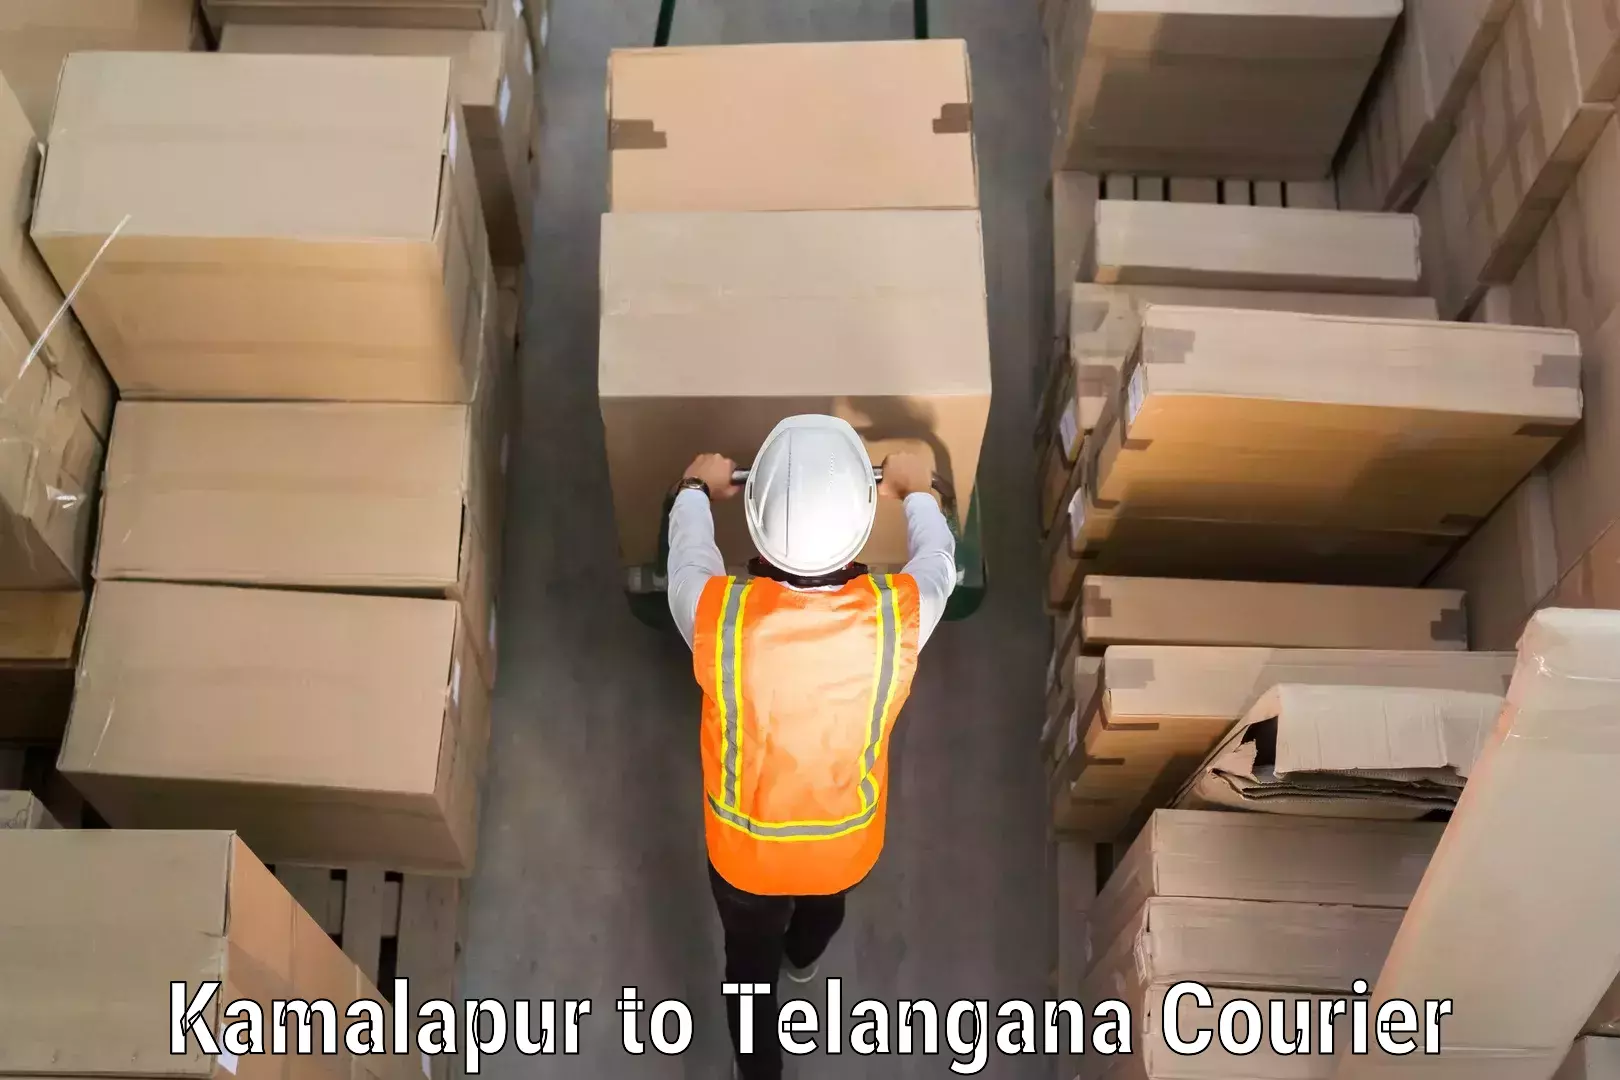 Efficient luggage delivery Kamalapur to Bejjanki